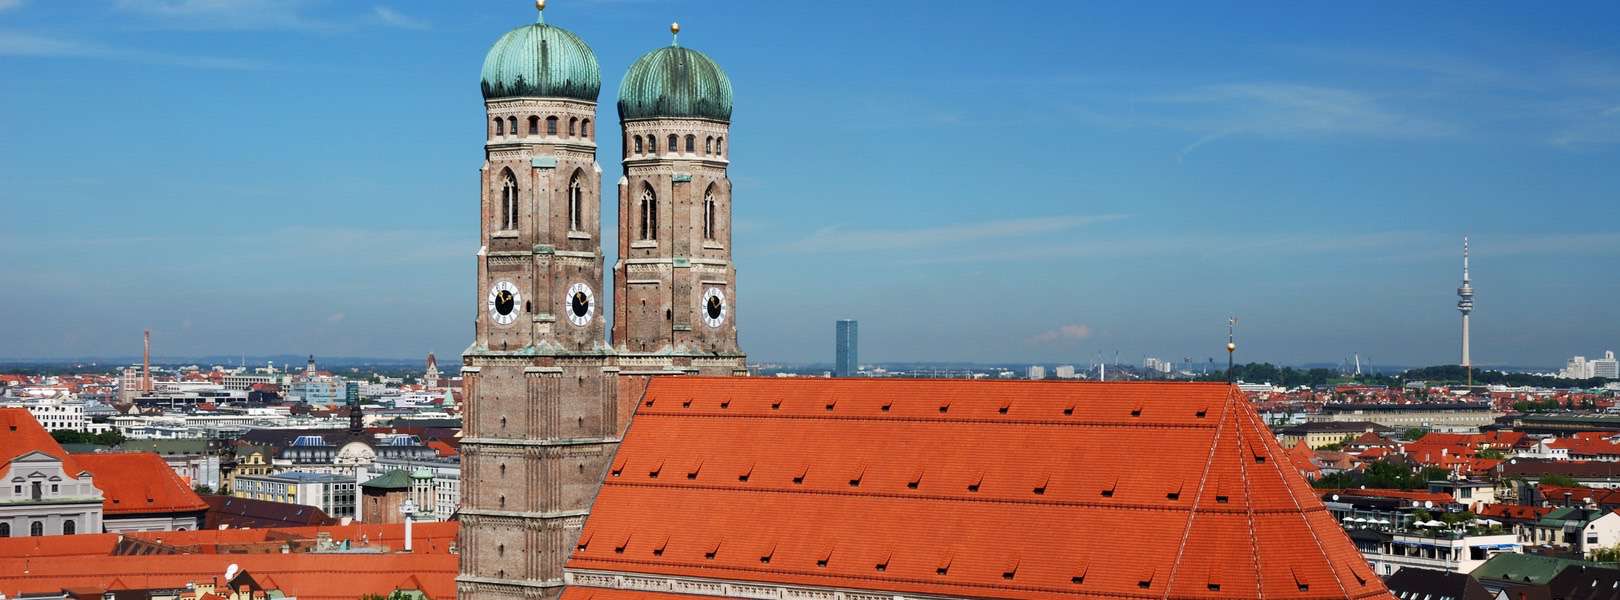 Blick auf die Frauenkirche München